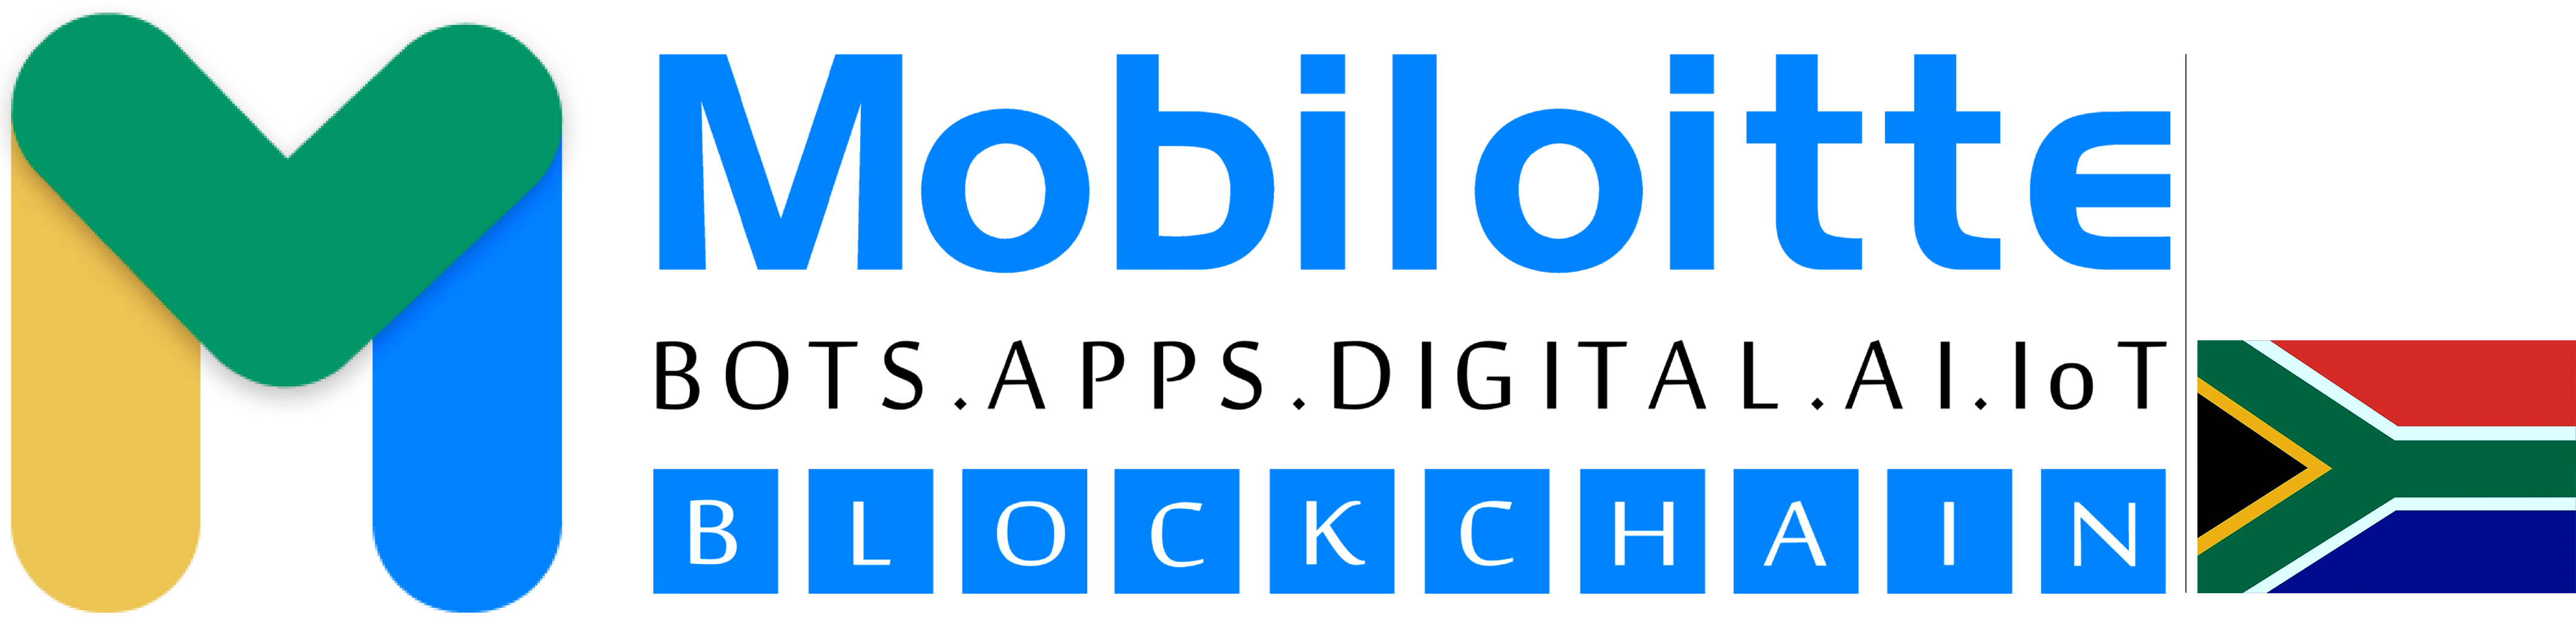 company-header-logo